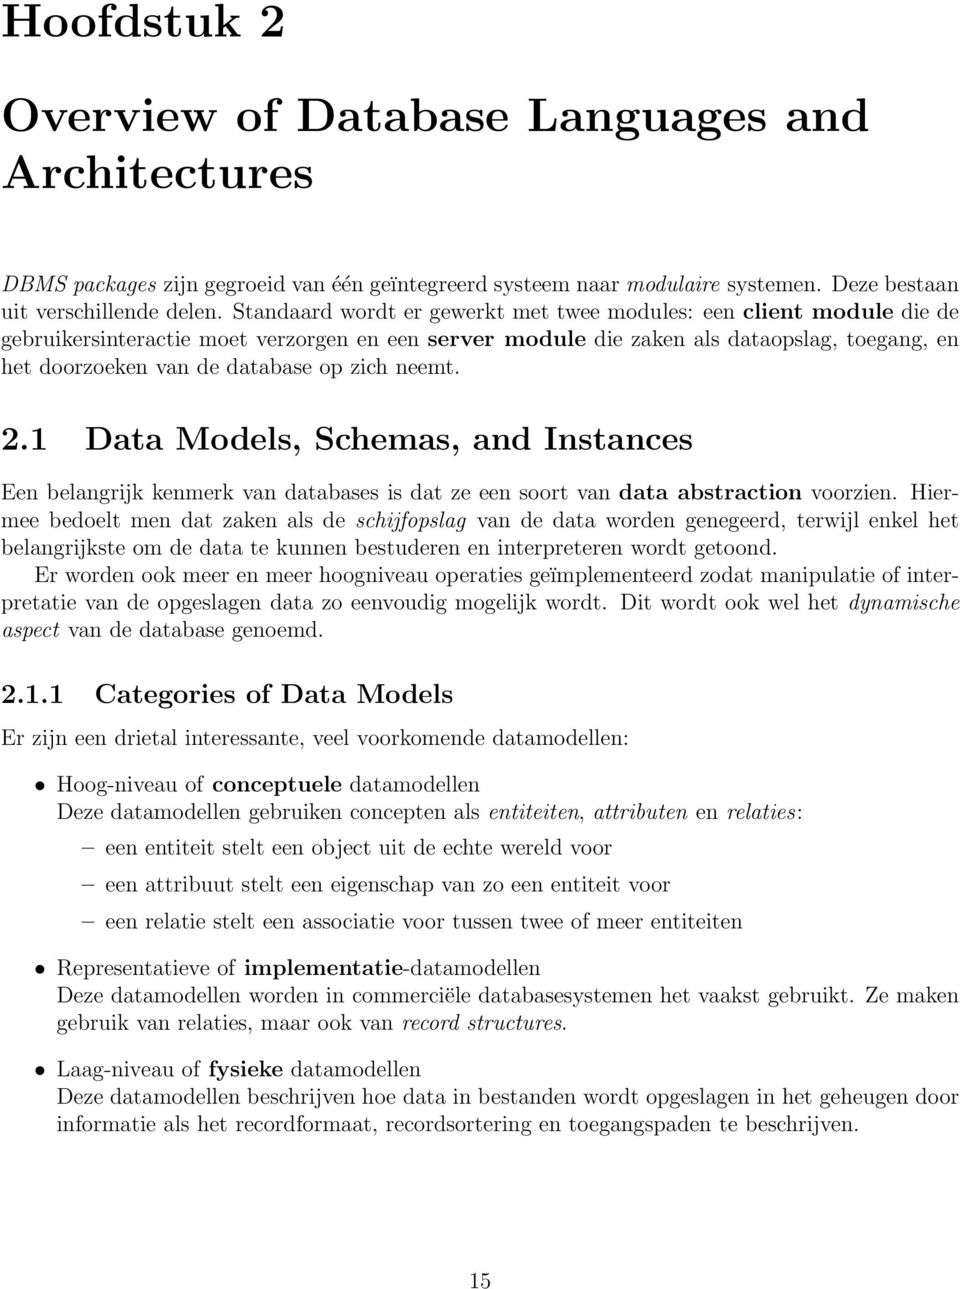 zich neemt. 2.1 Data Models, Schemas, and Instances Een belangrijk kenmerk van databases is dat ze een soort van data abstraction voorzien.